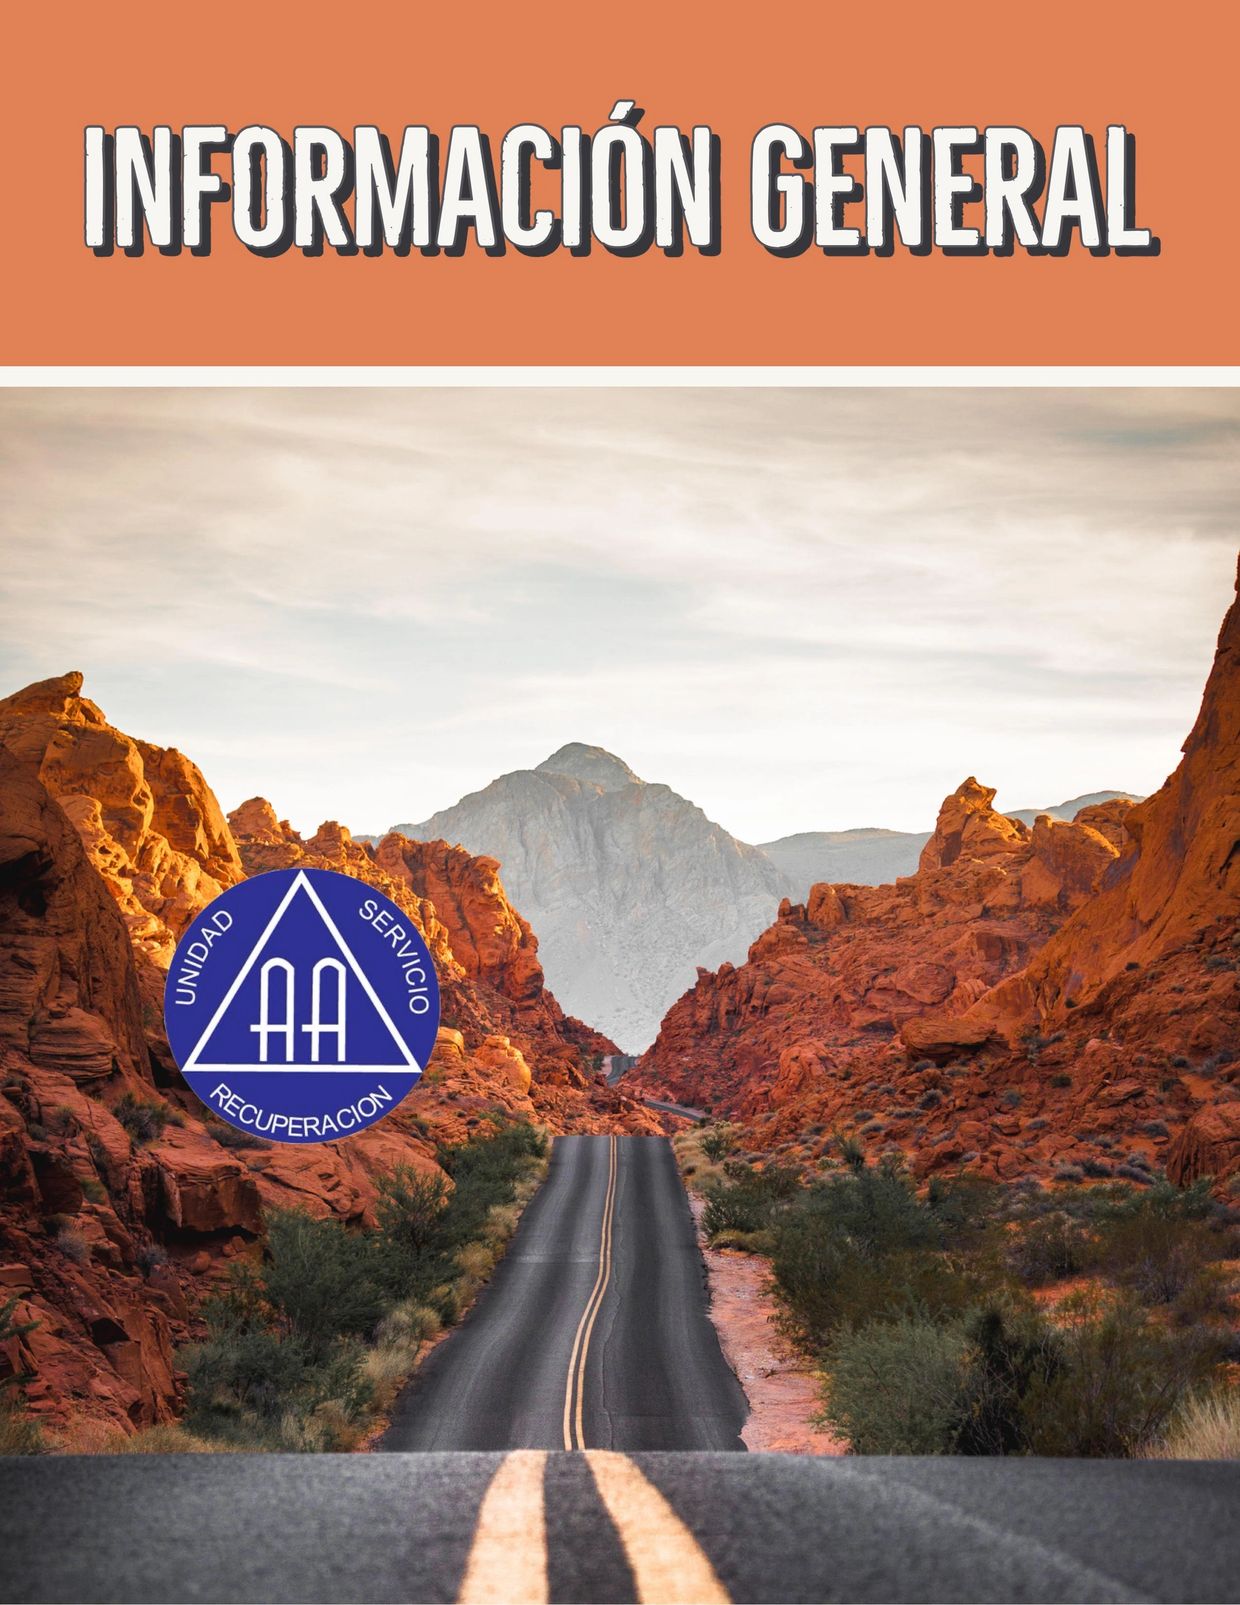 Información General sobre Alcohólicos Anónimos. Programa de recuperación del alcoholismo. Arizona. 